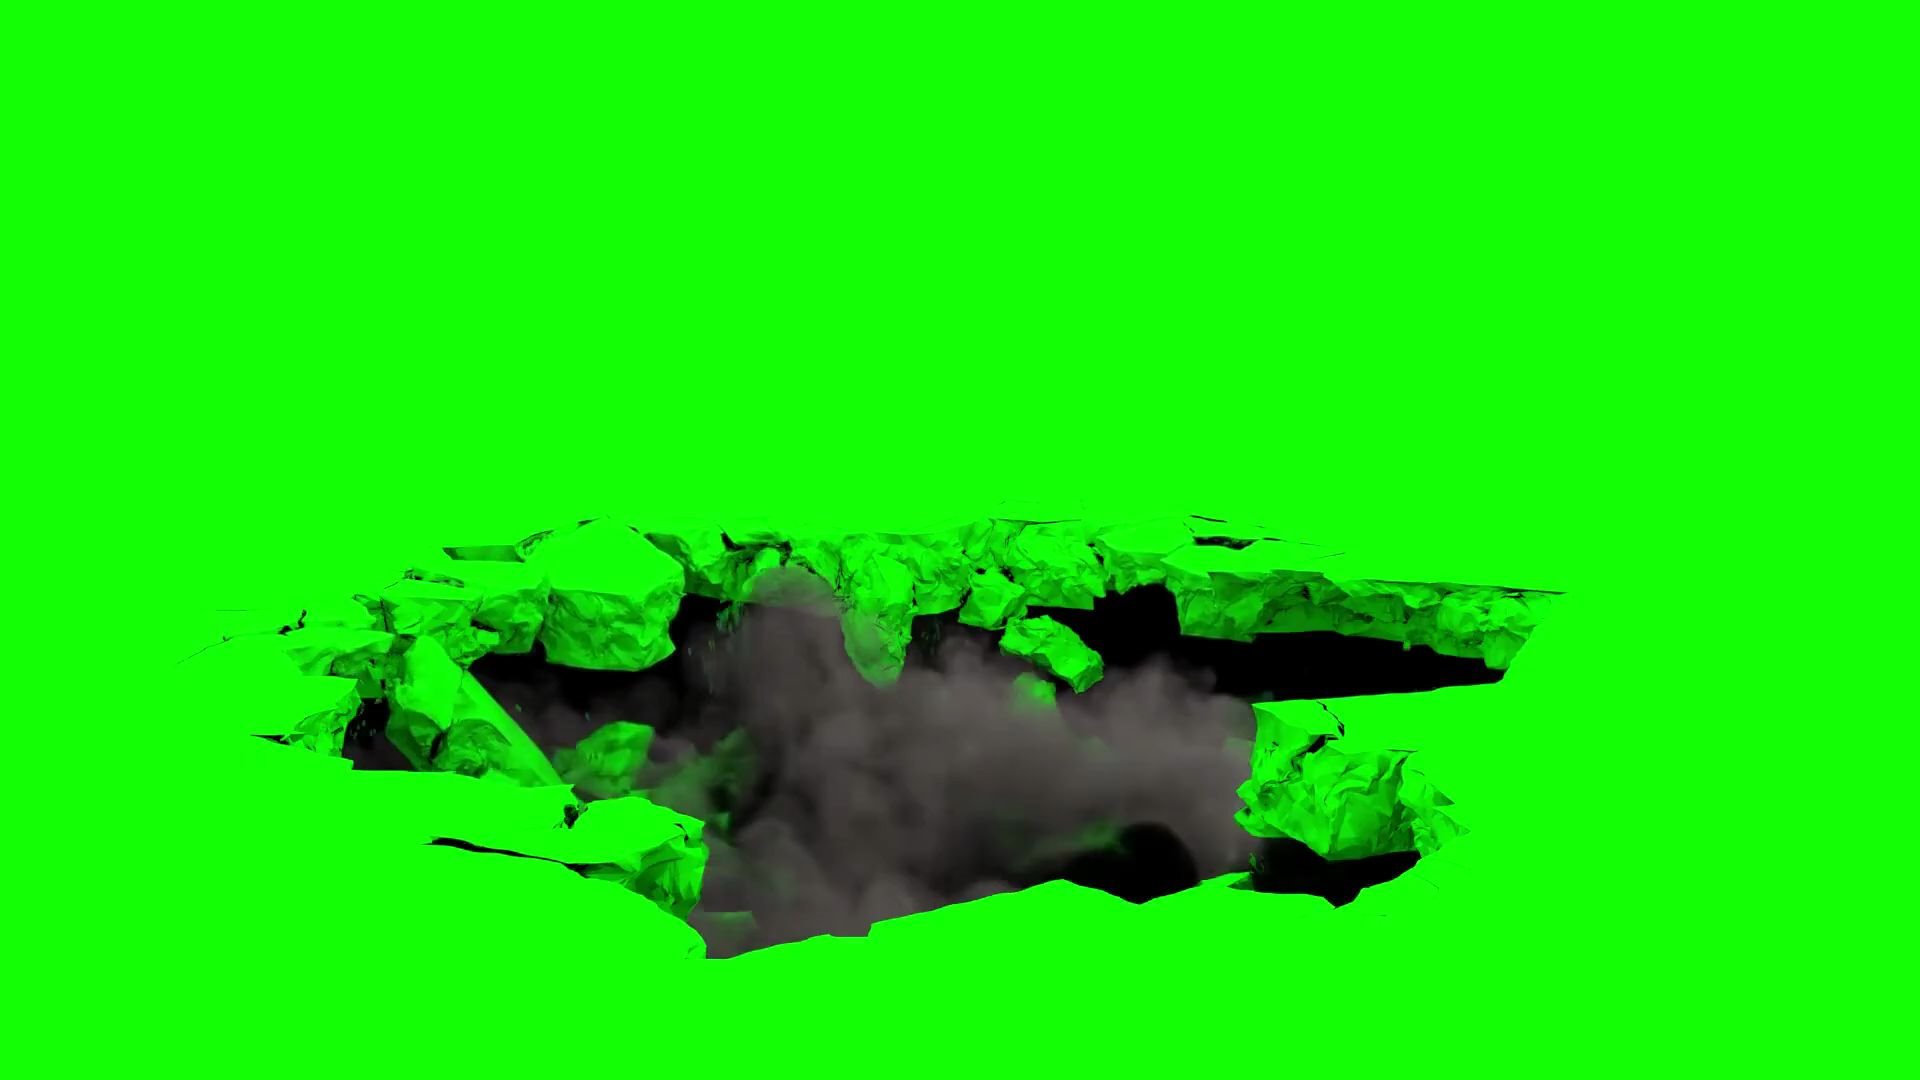 【绿幕素材】地面坍塌裂缝绿幕素材包无版权无水印自取［1080p HD］